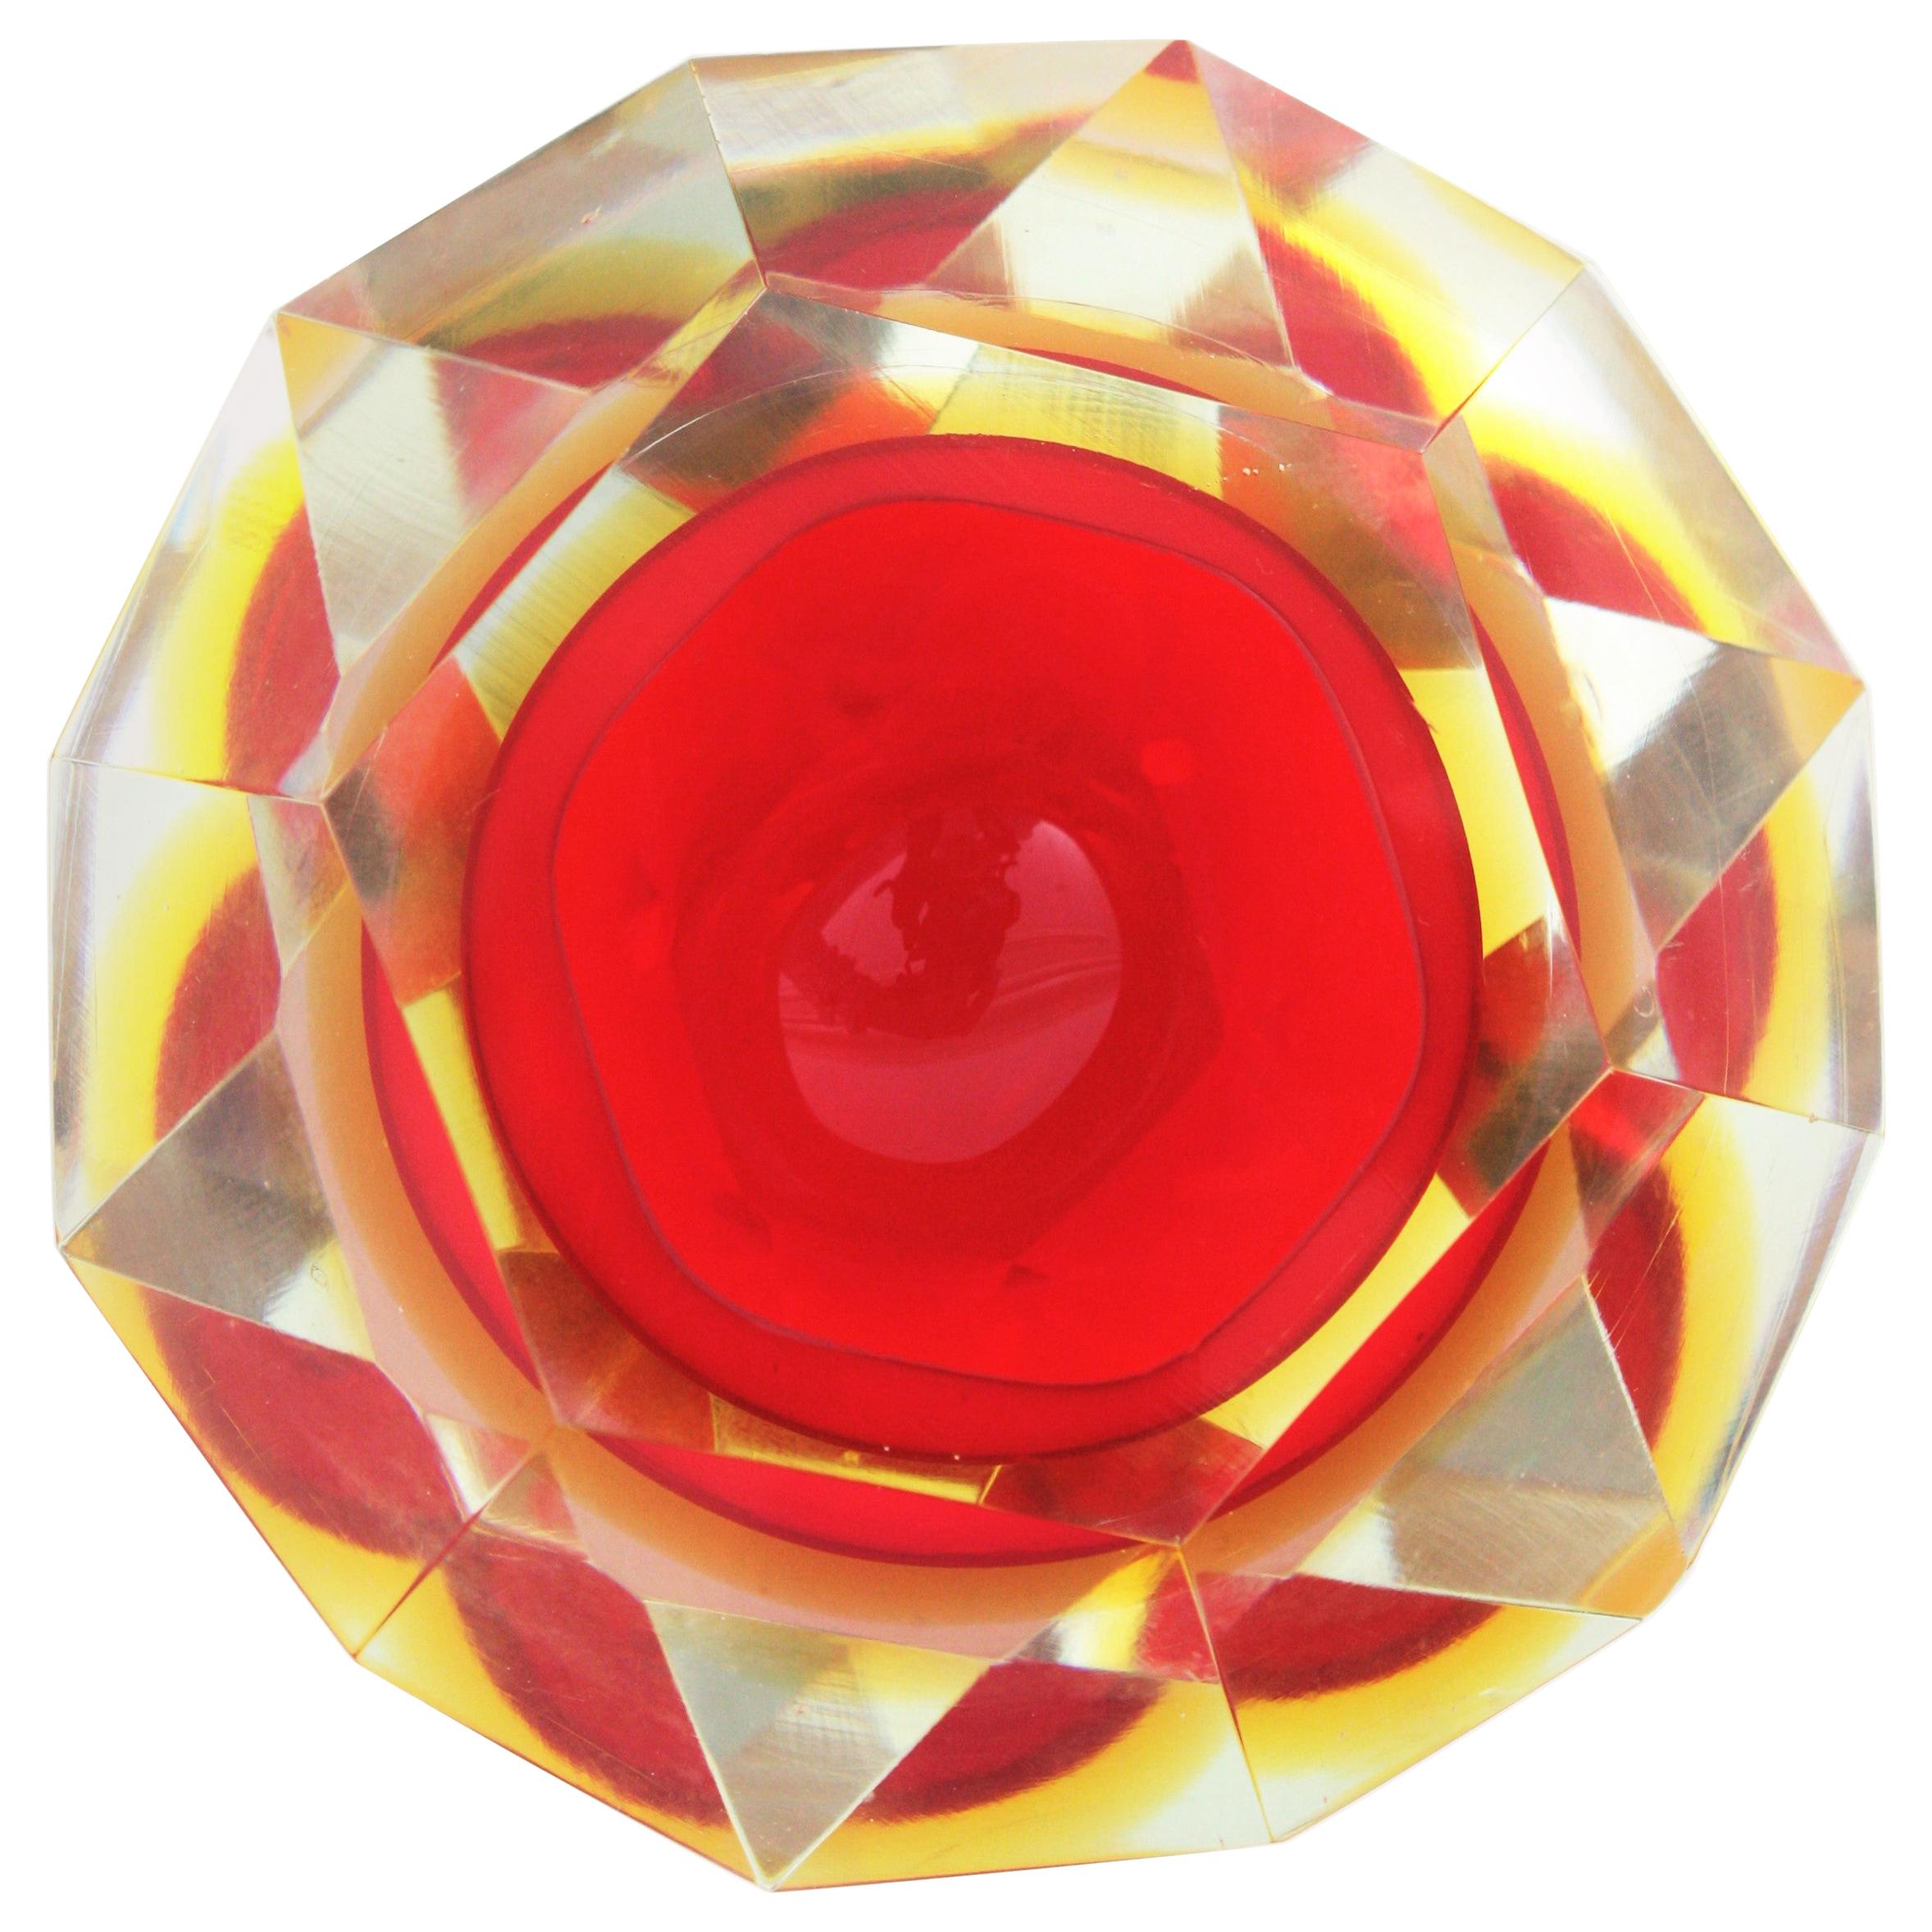 Flavio Poli Sommerso rote und gelbe rautenförmige facettierte Muranoglasschale. Zuschreibung an Flavio Poli für Seguso, Italien, 1950er Jahre.
Diese Midcentury Modern Schale aus rotem Muranoglas hat eine Schicht aus gelbem Glas, die mit der